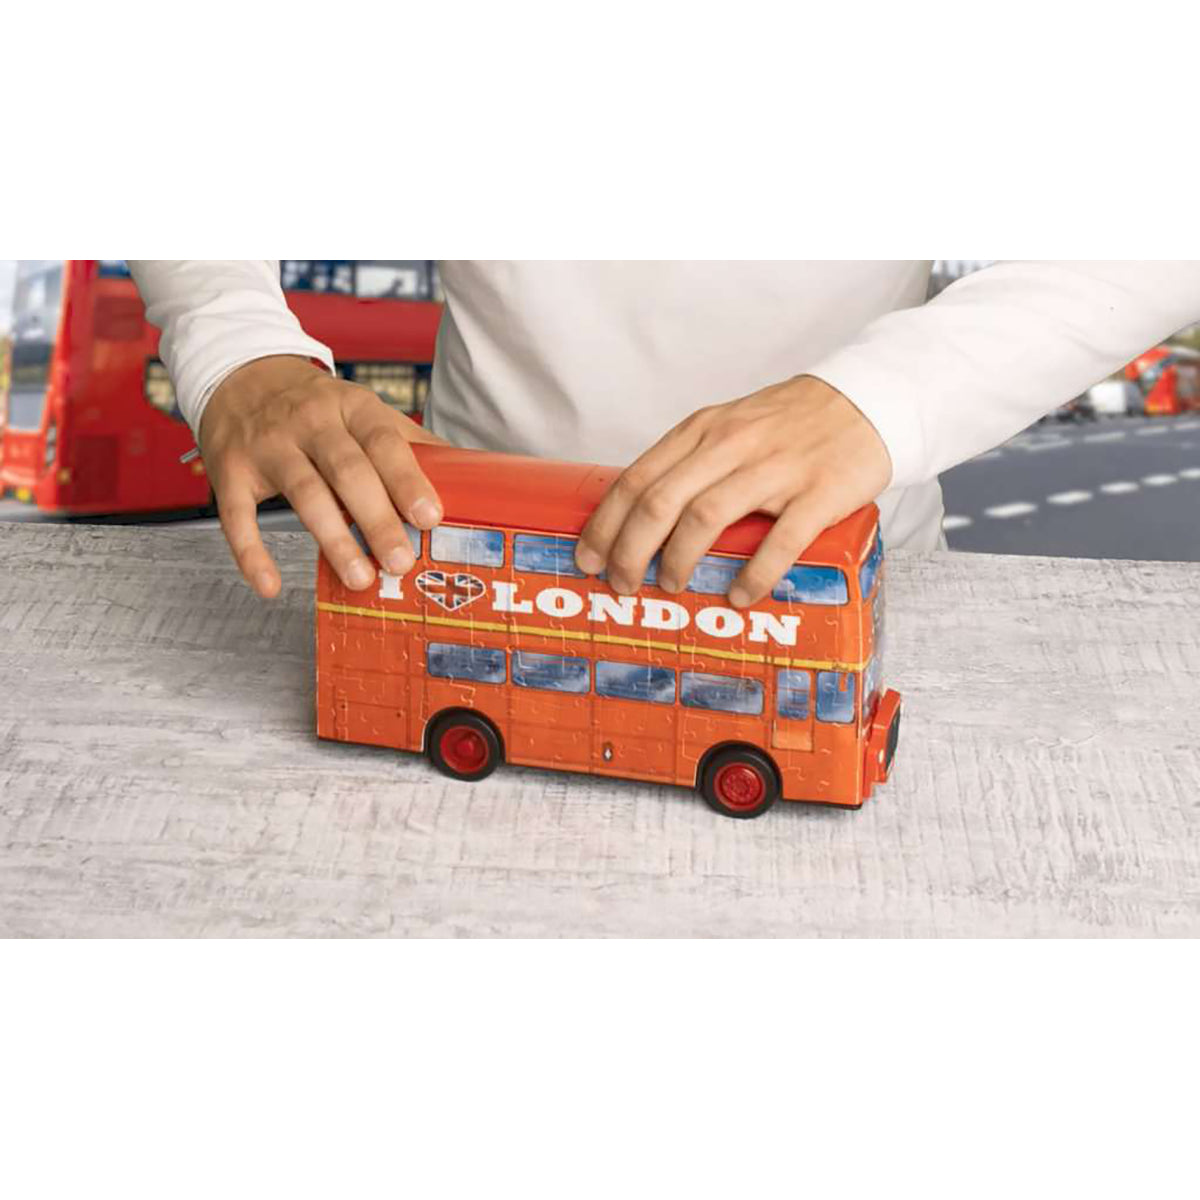 London Red Bus 3D Puzzle assembled 2